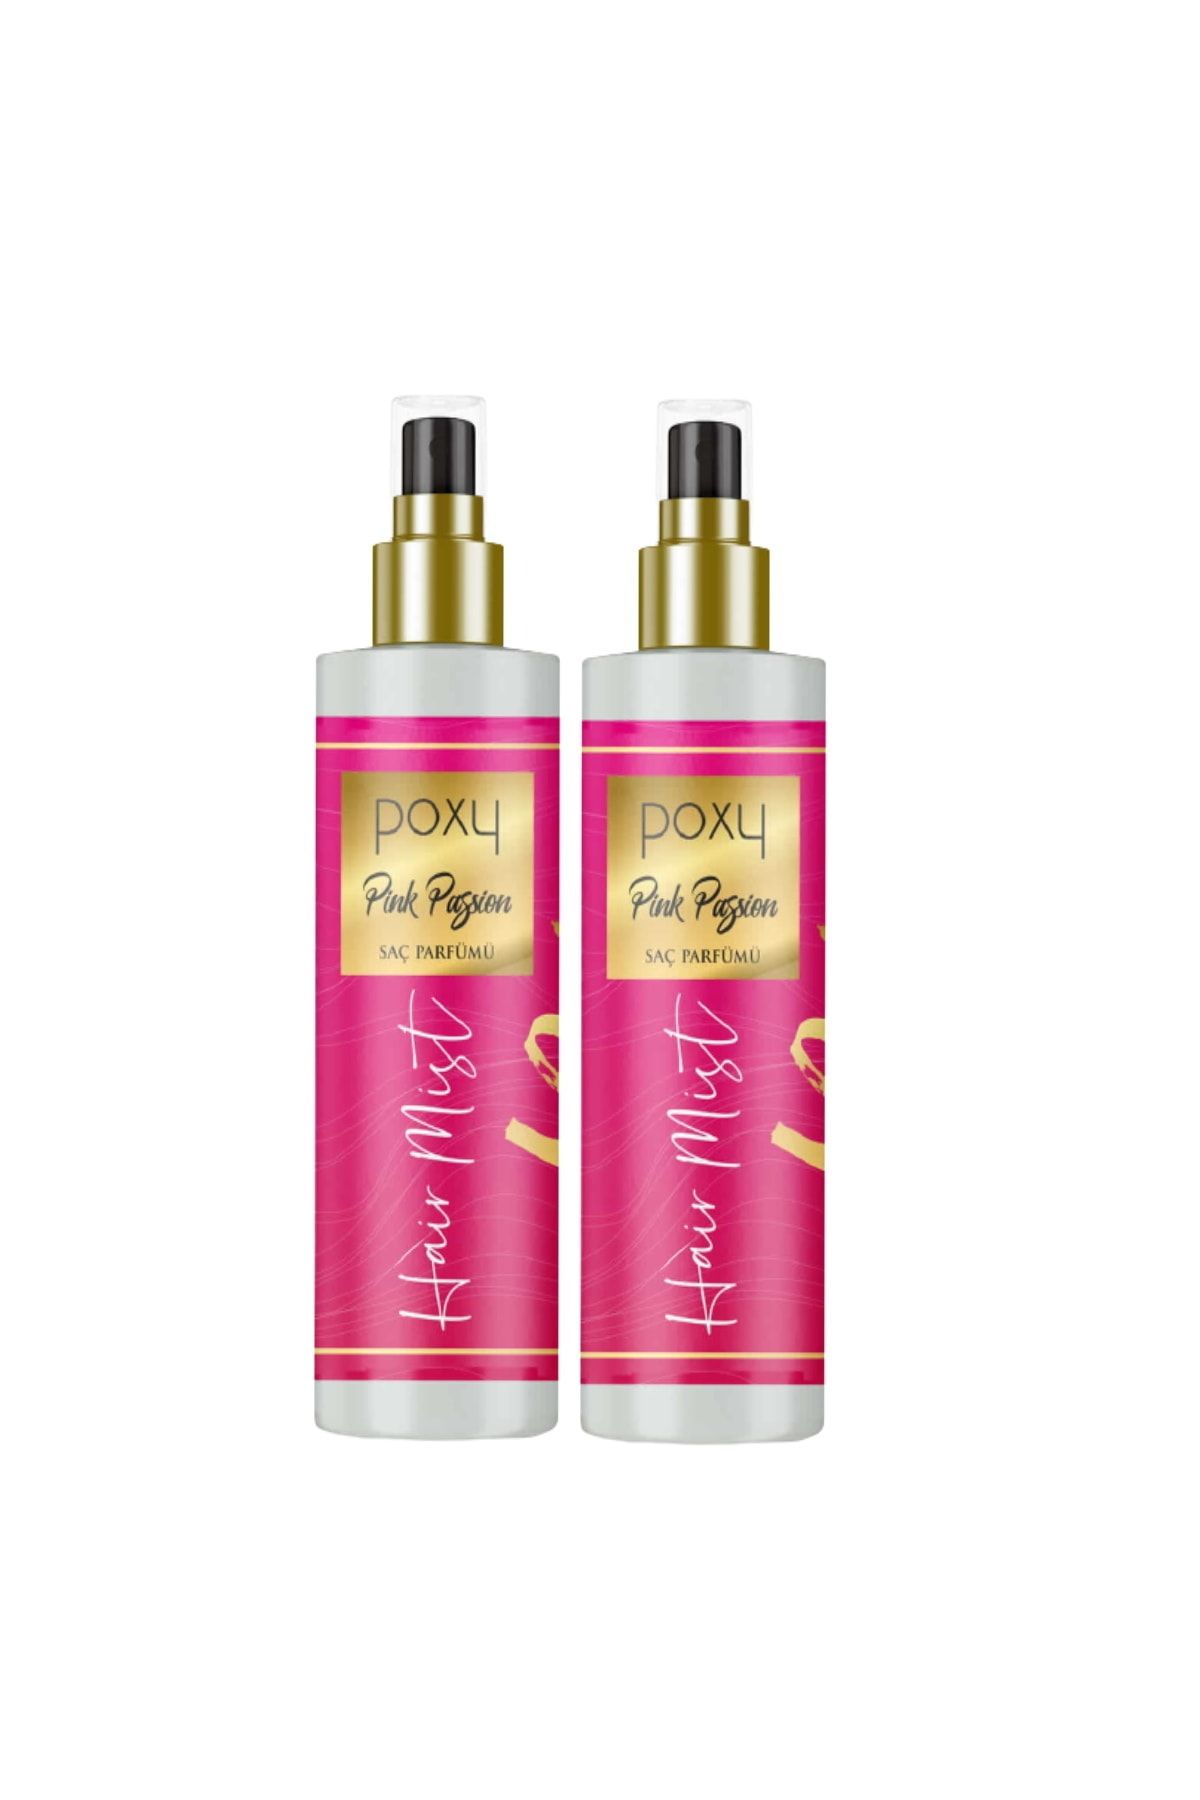 Poxy Pink Passion Saç Parfümü 150 Ml X 2 Adet